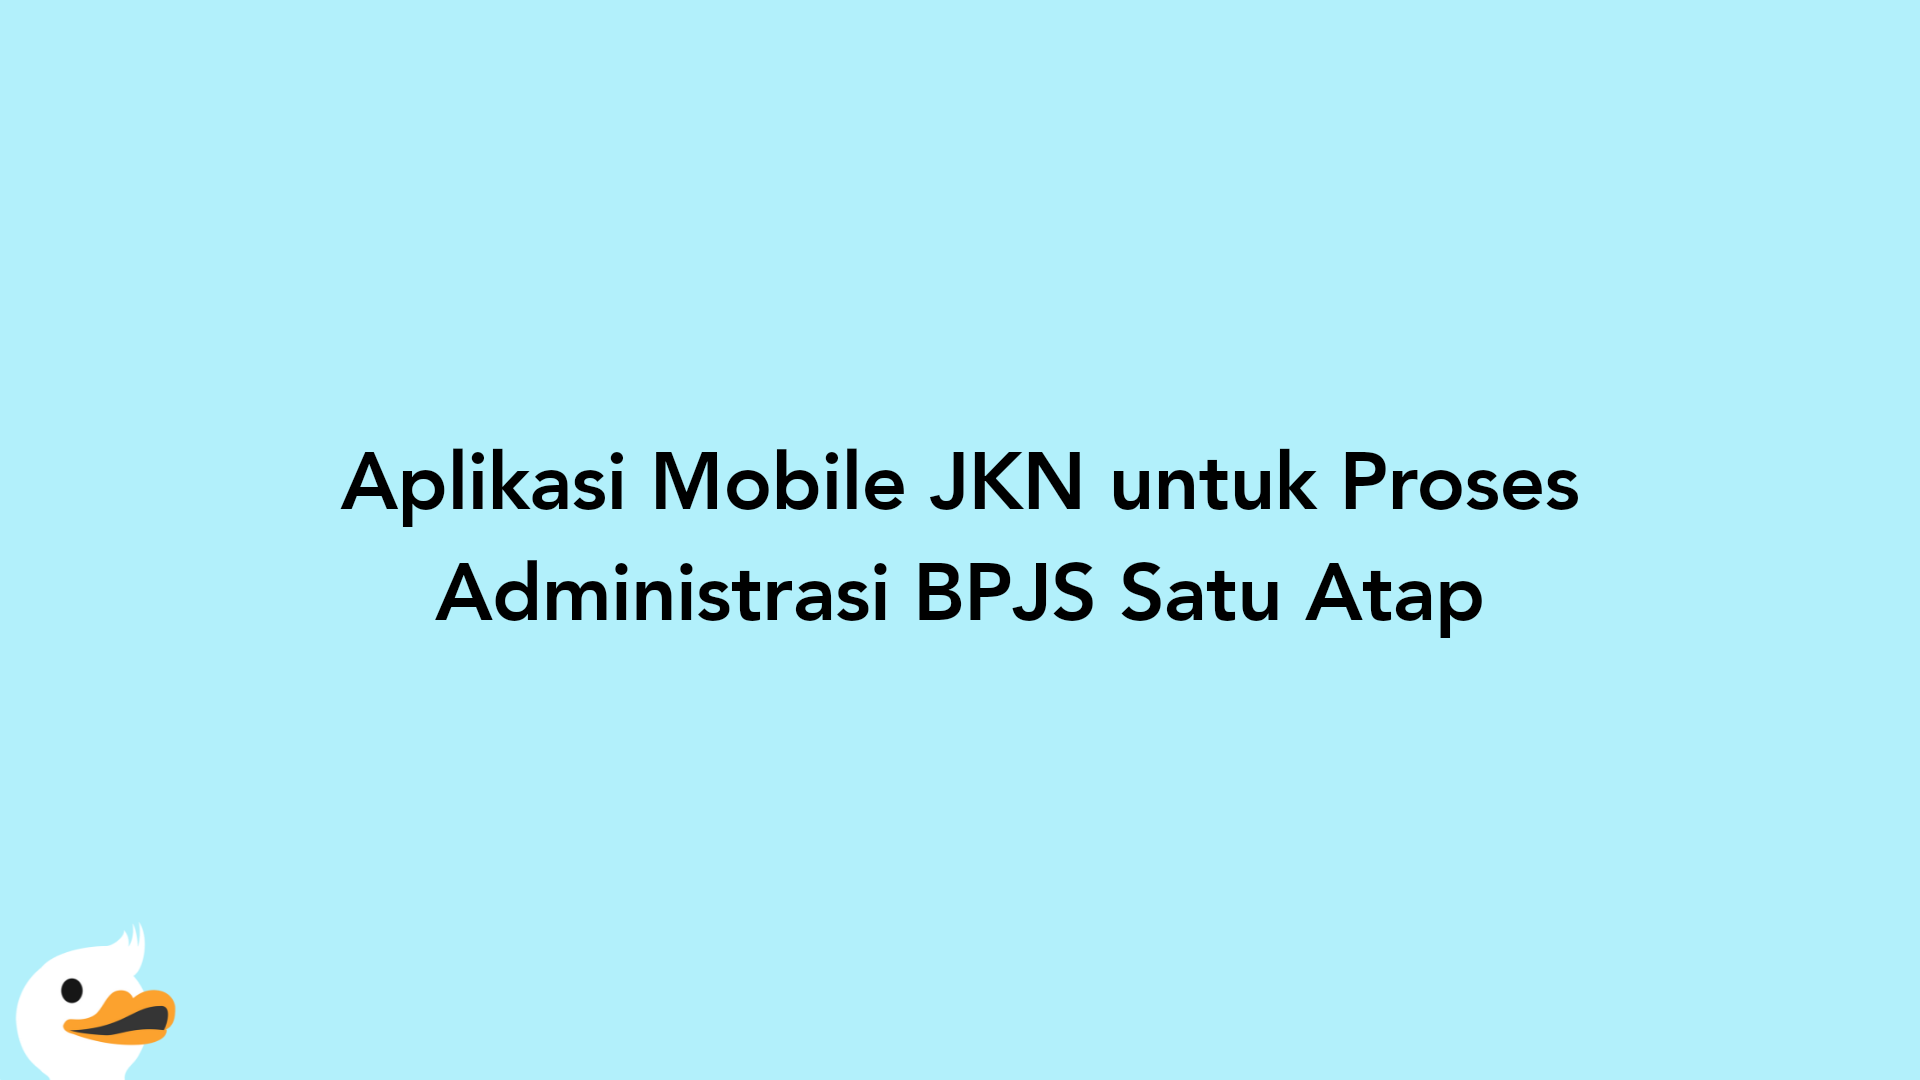 Aplikasi Mobile JKN untuk Proses Administrasi BPJS Satu Atap